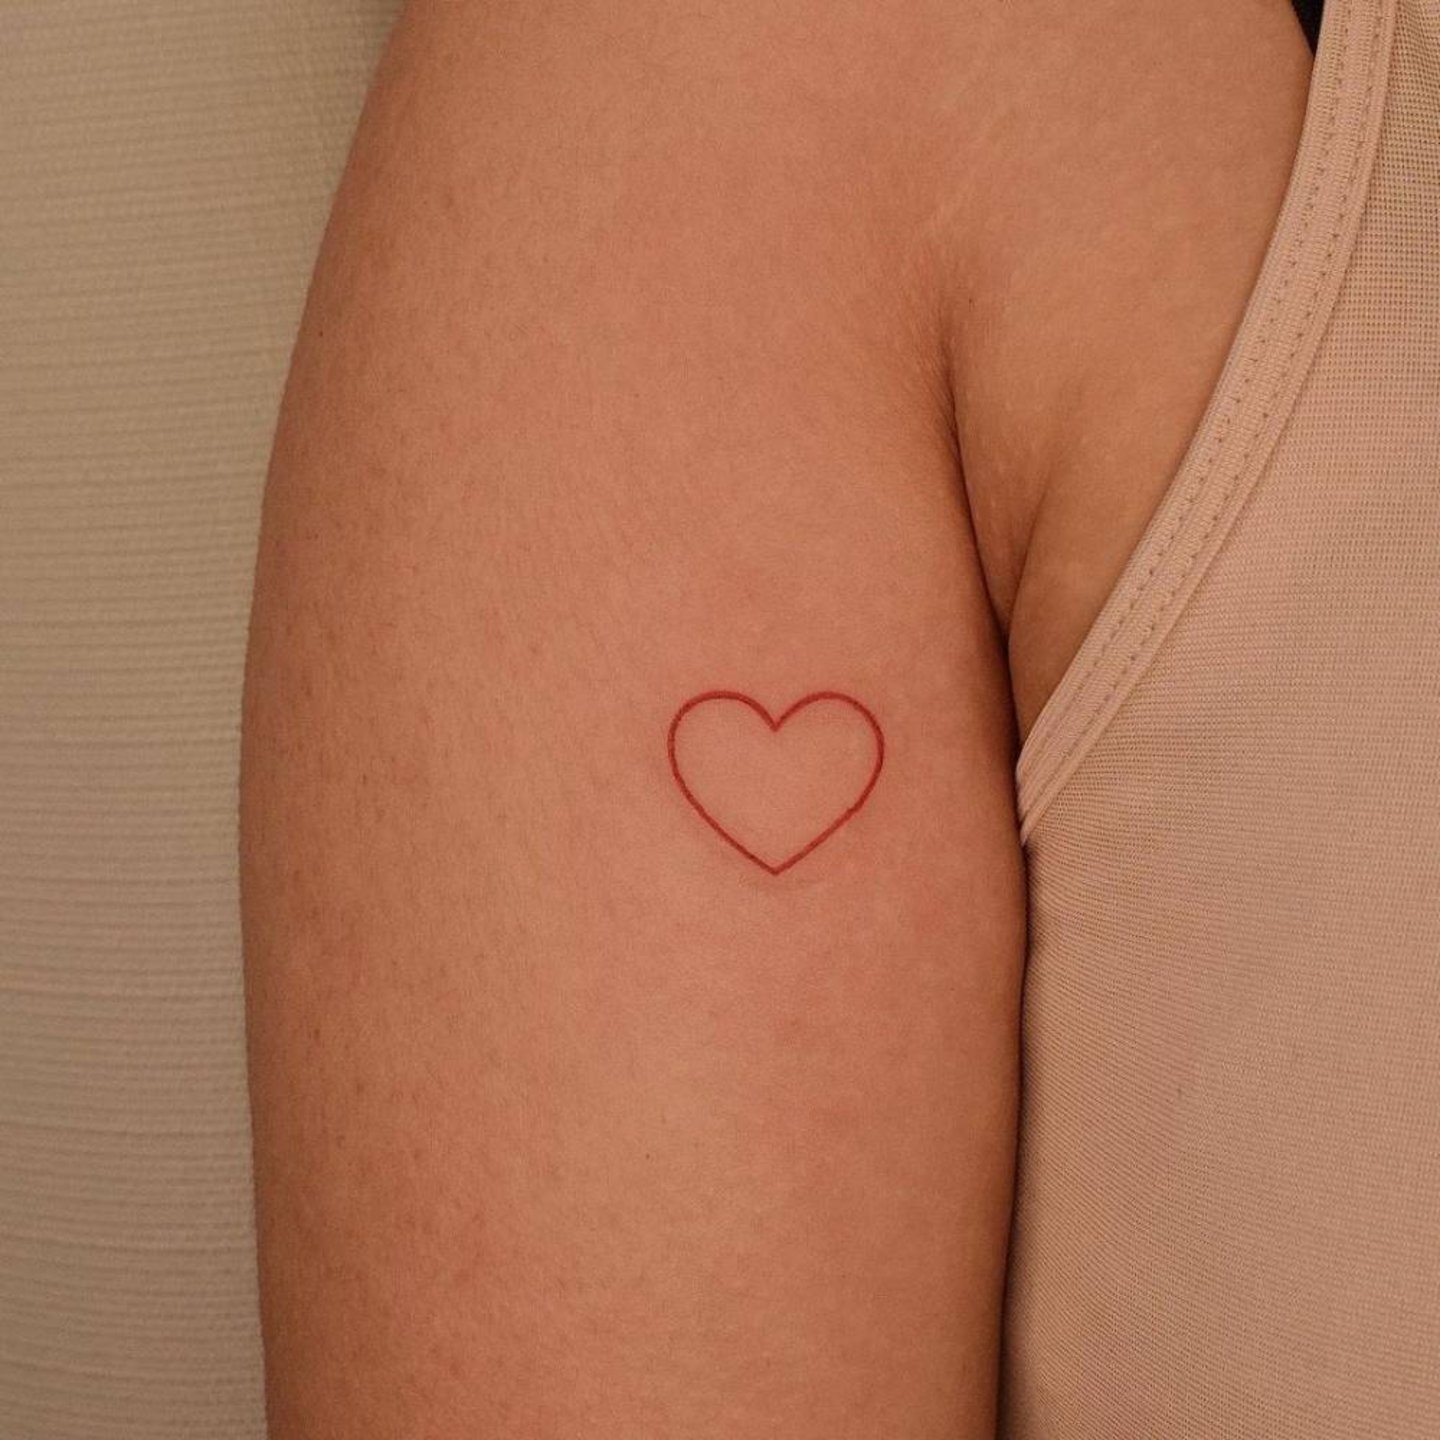 Tatuaje de corazon brazo